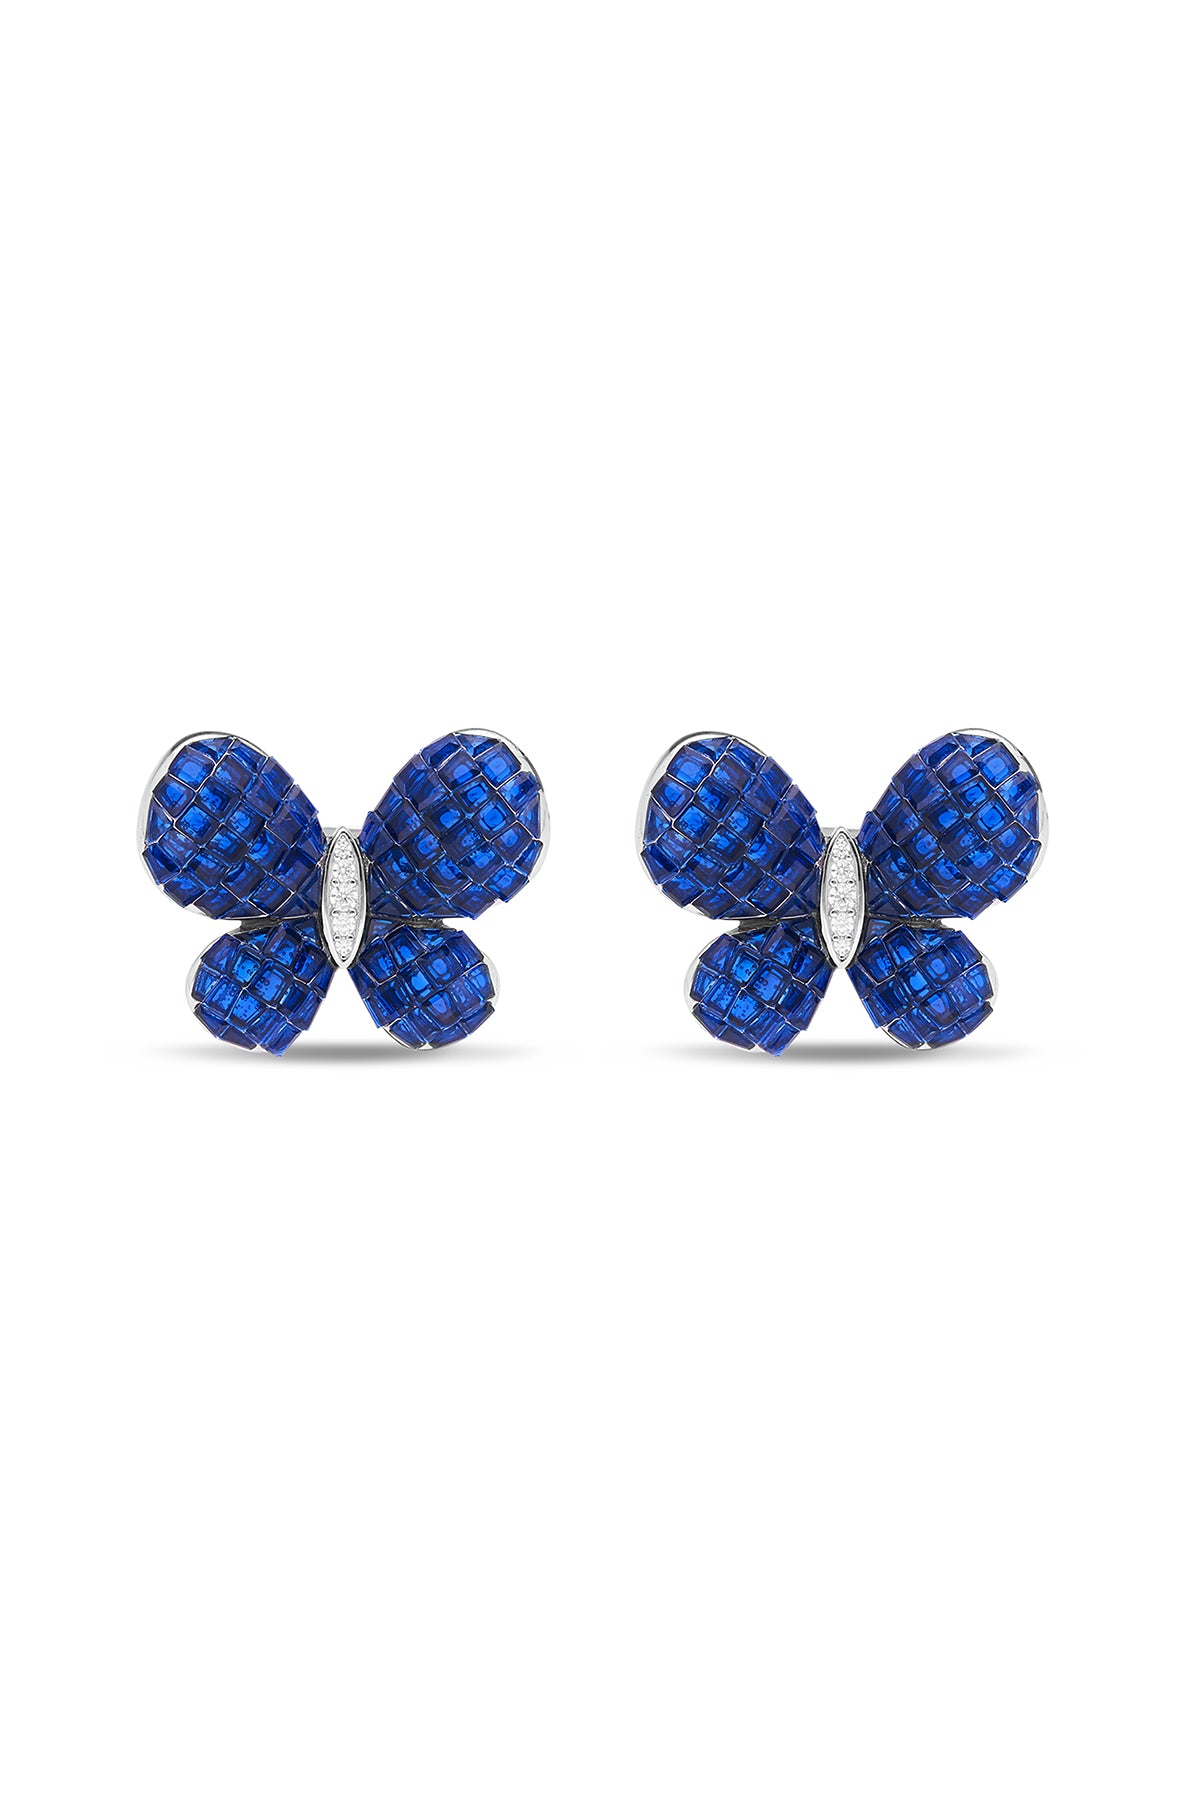 Fluttering Wings Blue Sapphire Earrings